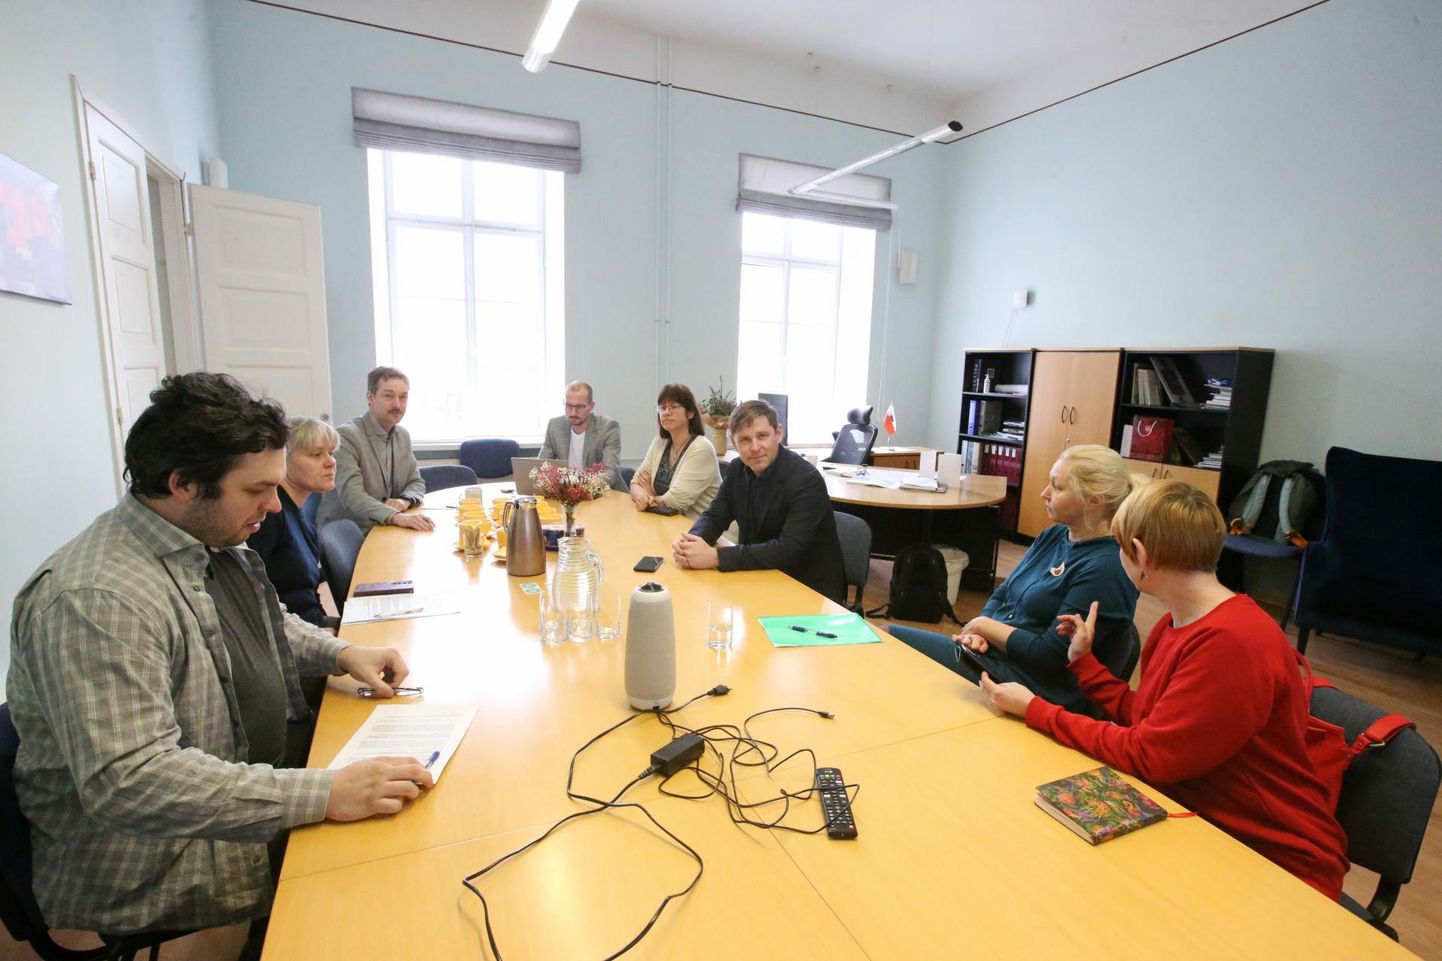 Eile läbirääkimiste laua taha istunutest on pildil Ants Siim (vasakult), Annika Hramov, Lemmit Kaplinski, Sten Svetljakov, Kristina Pai, Risto Lehiste, Triin Vaaro ja Marge Pärnits.